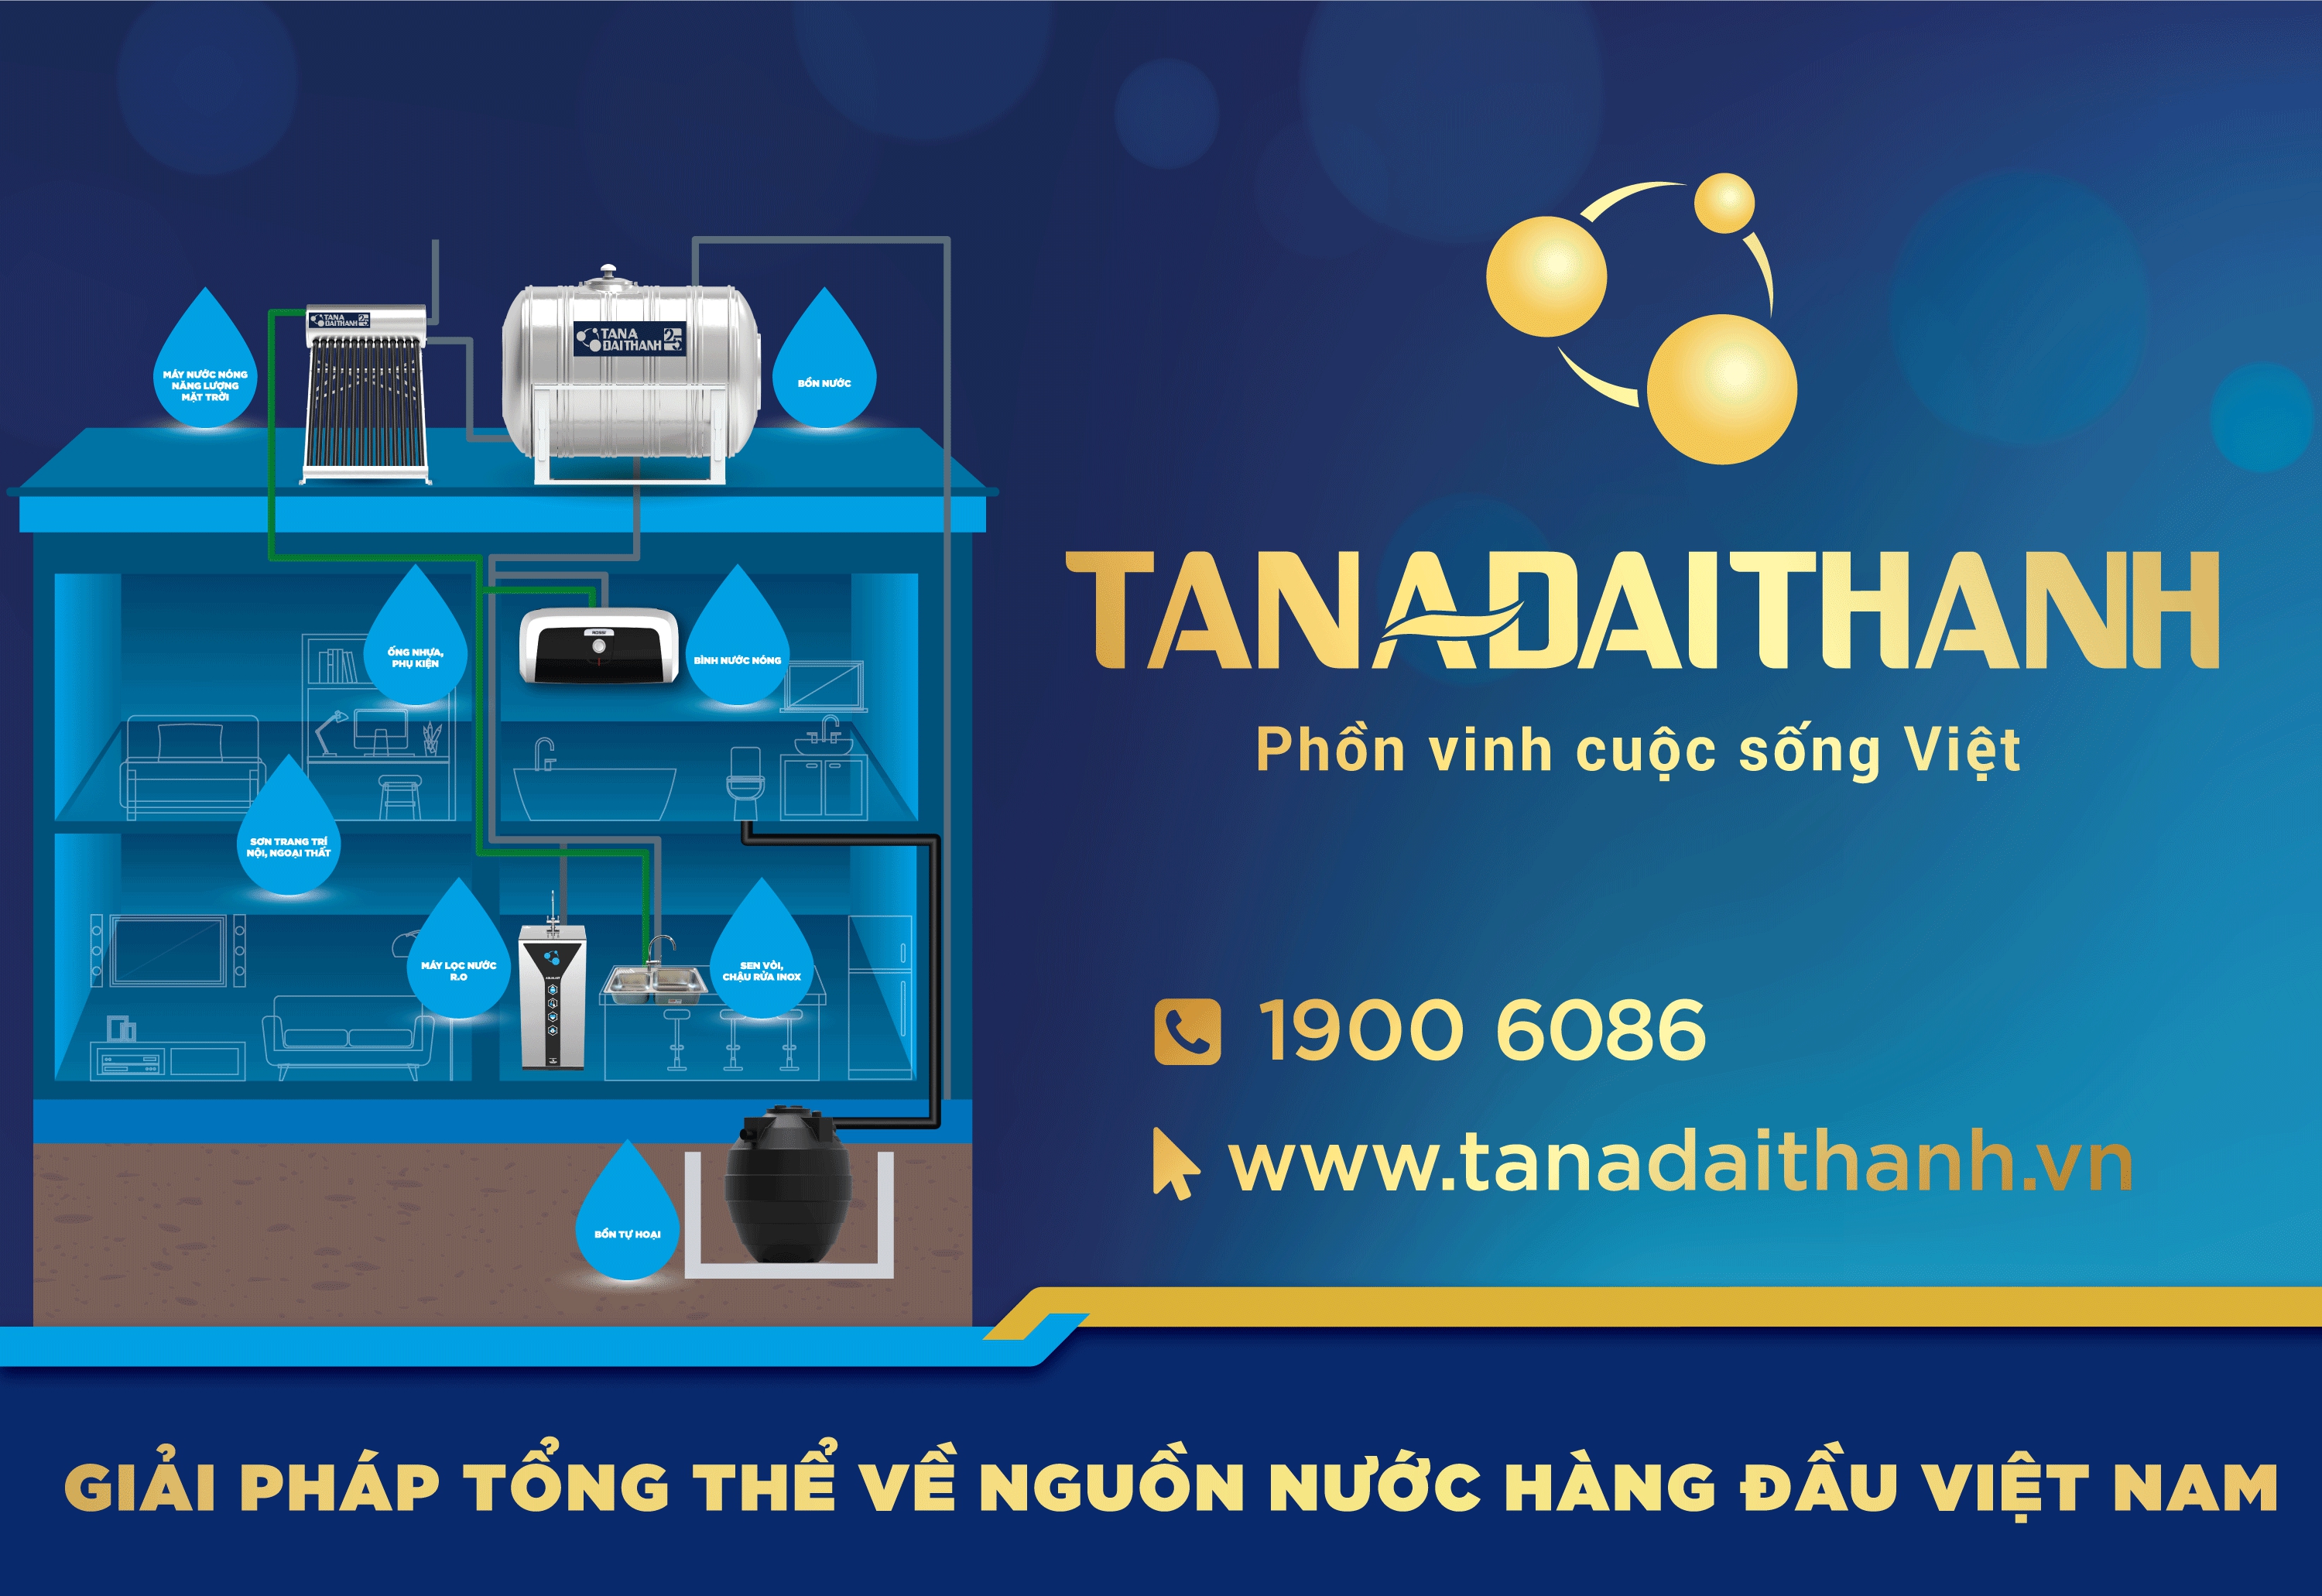 Tập đoàn Tân Á Đại Thành cung cấp giải pháp tổng thể về nguồn nước hàng đầu Việt Nam